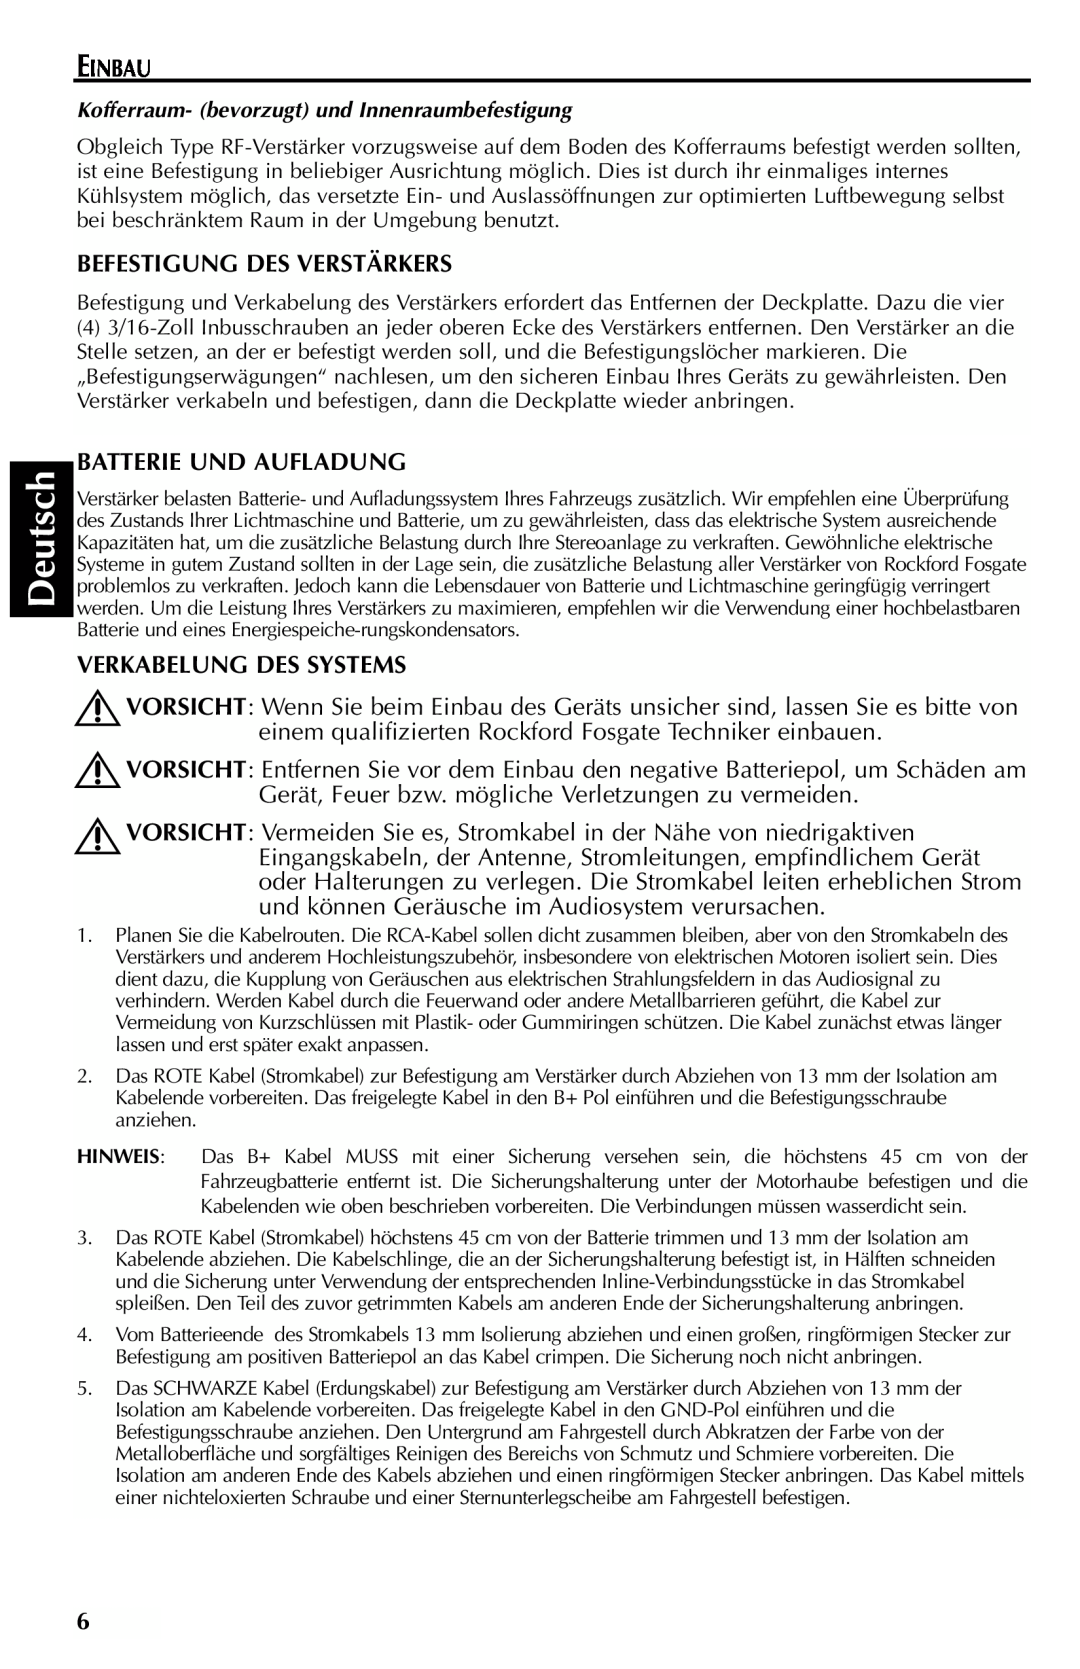 Rockford Fosgate FFX6 manual Deutsch, Einbau, Befestigung Des Verstärkers, Batterie Und Aufladung, Verkabelung Des Systems 